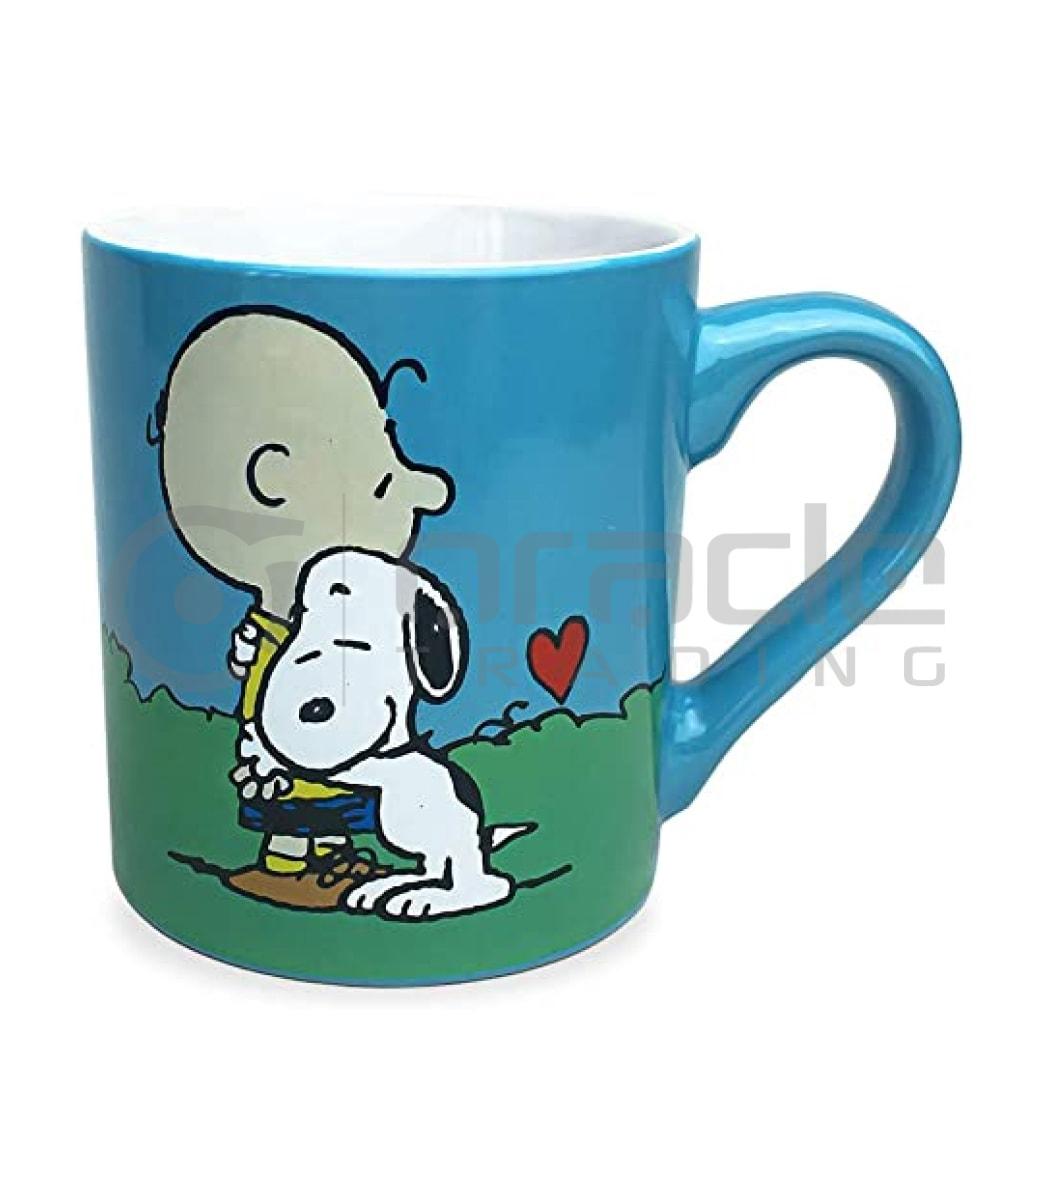 Peanuts Mug - Charlie & Snoopy